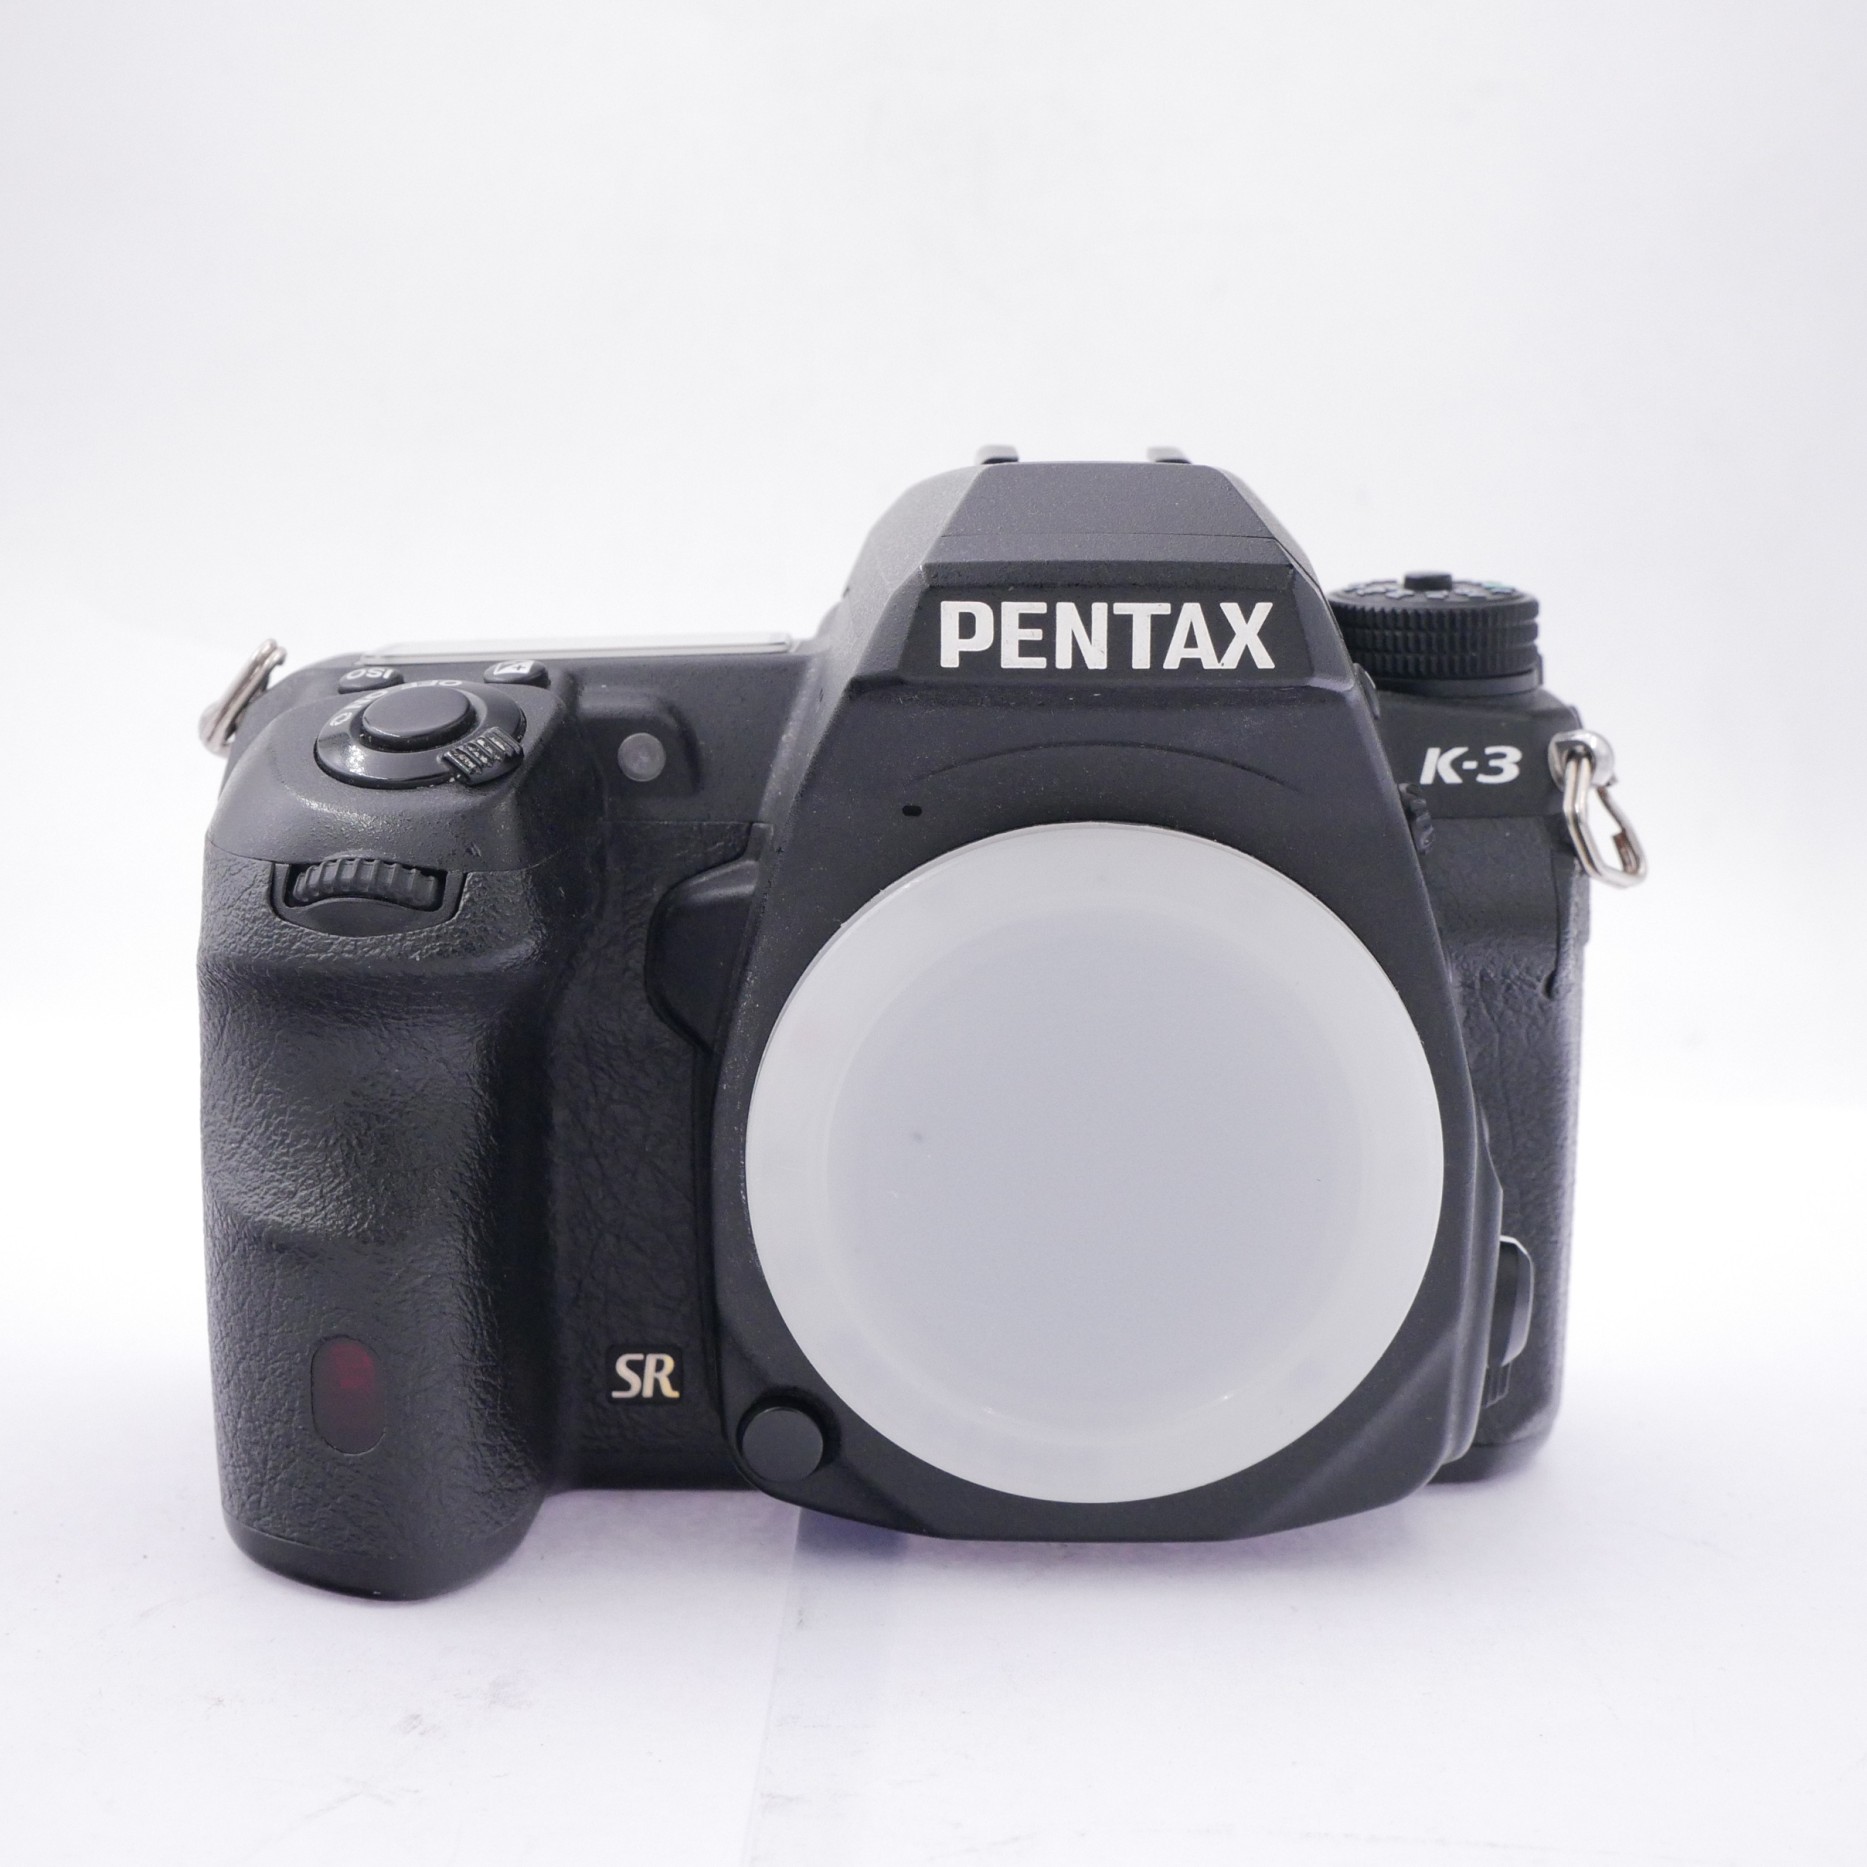 Pentax K-3 SR 13.5k Frames